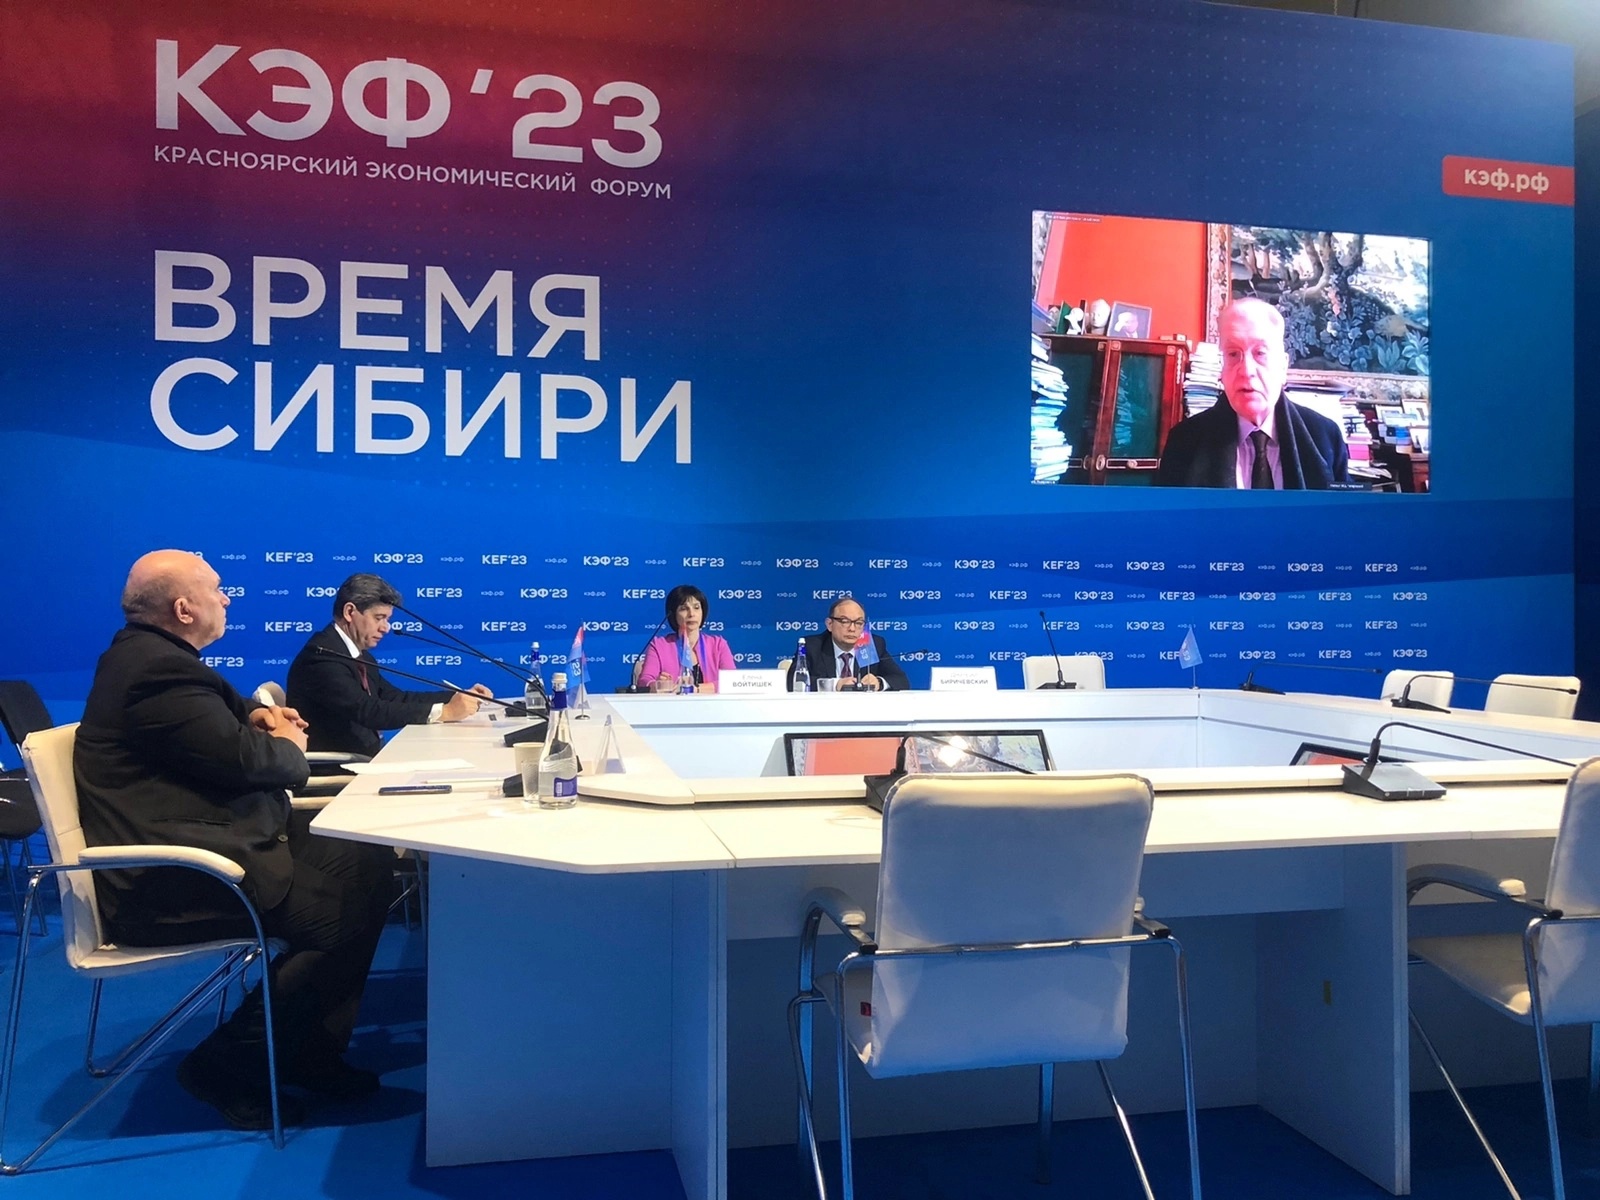  Востоковеды СПбГУ провели открытый диалог в рамках КЭФ’23